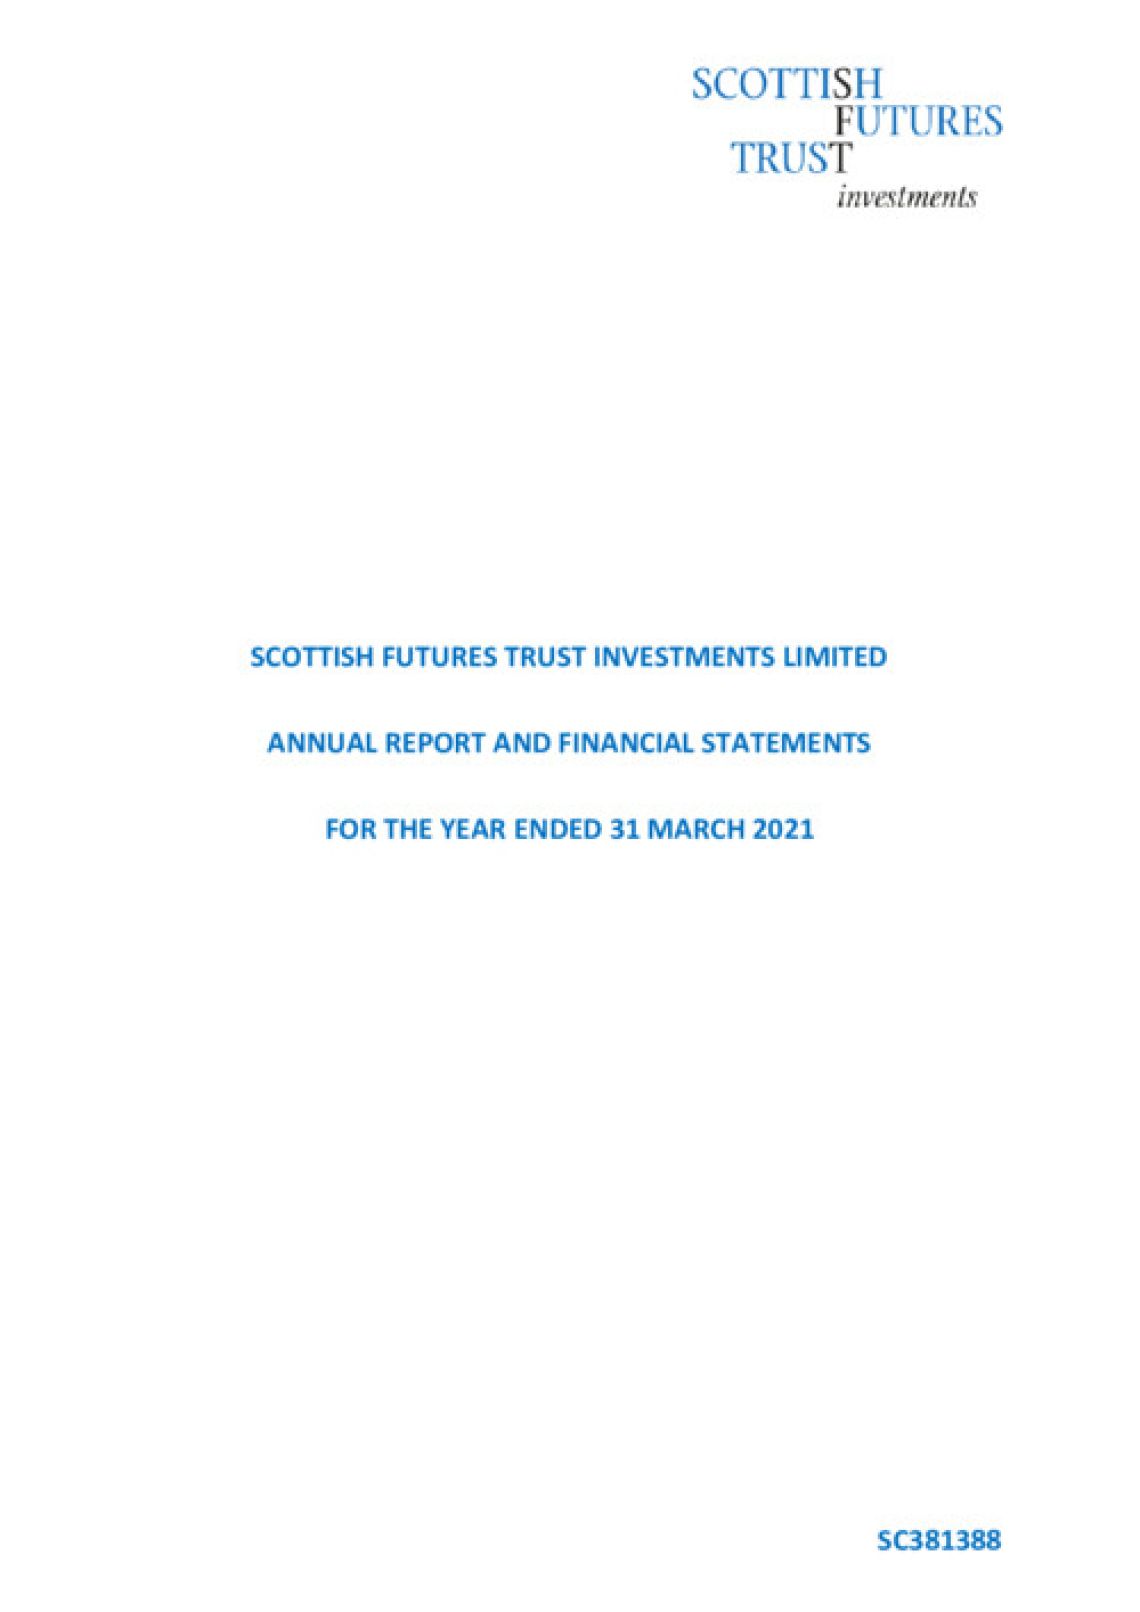 SFTi Annual Report 2020 - 2021 cover